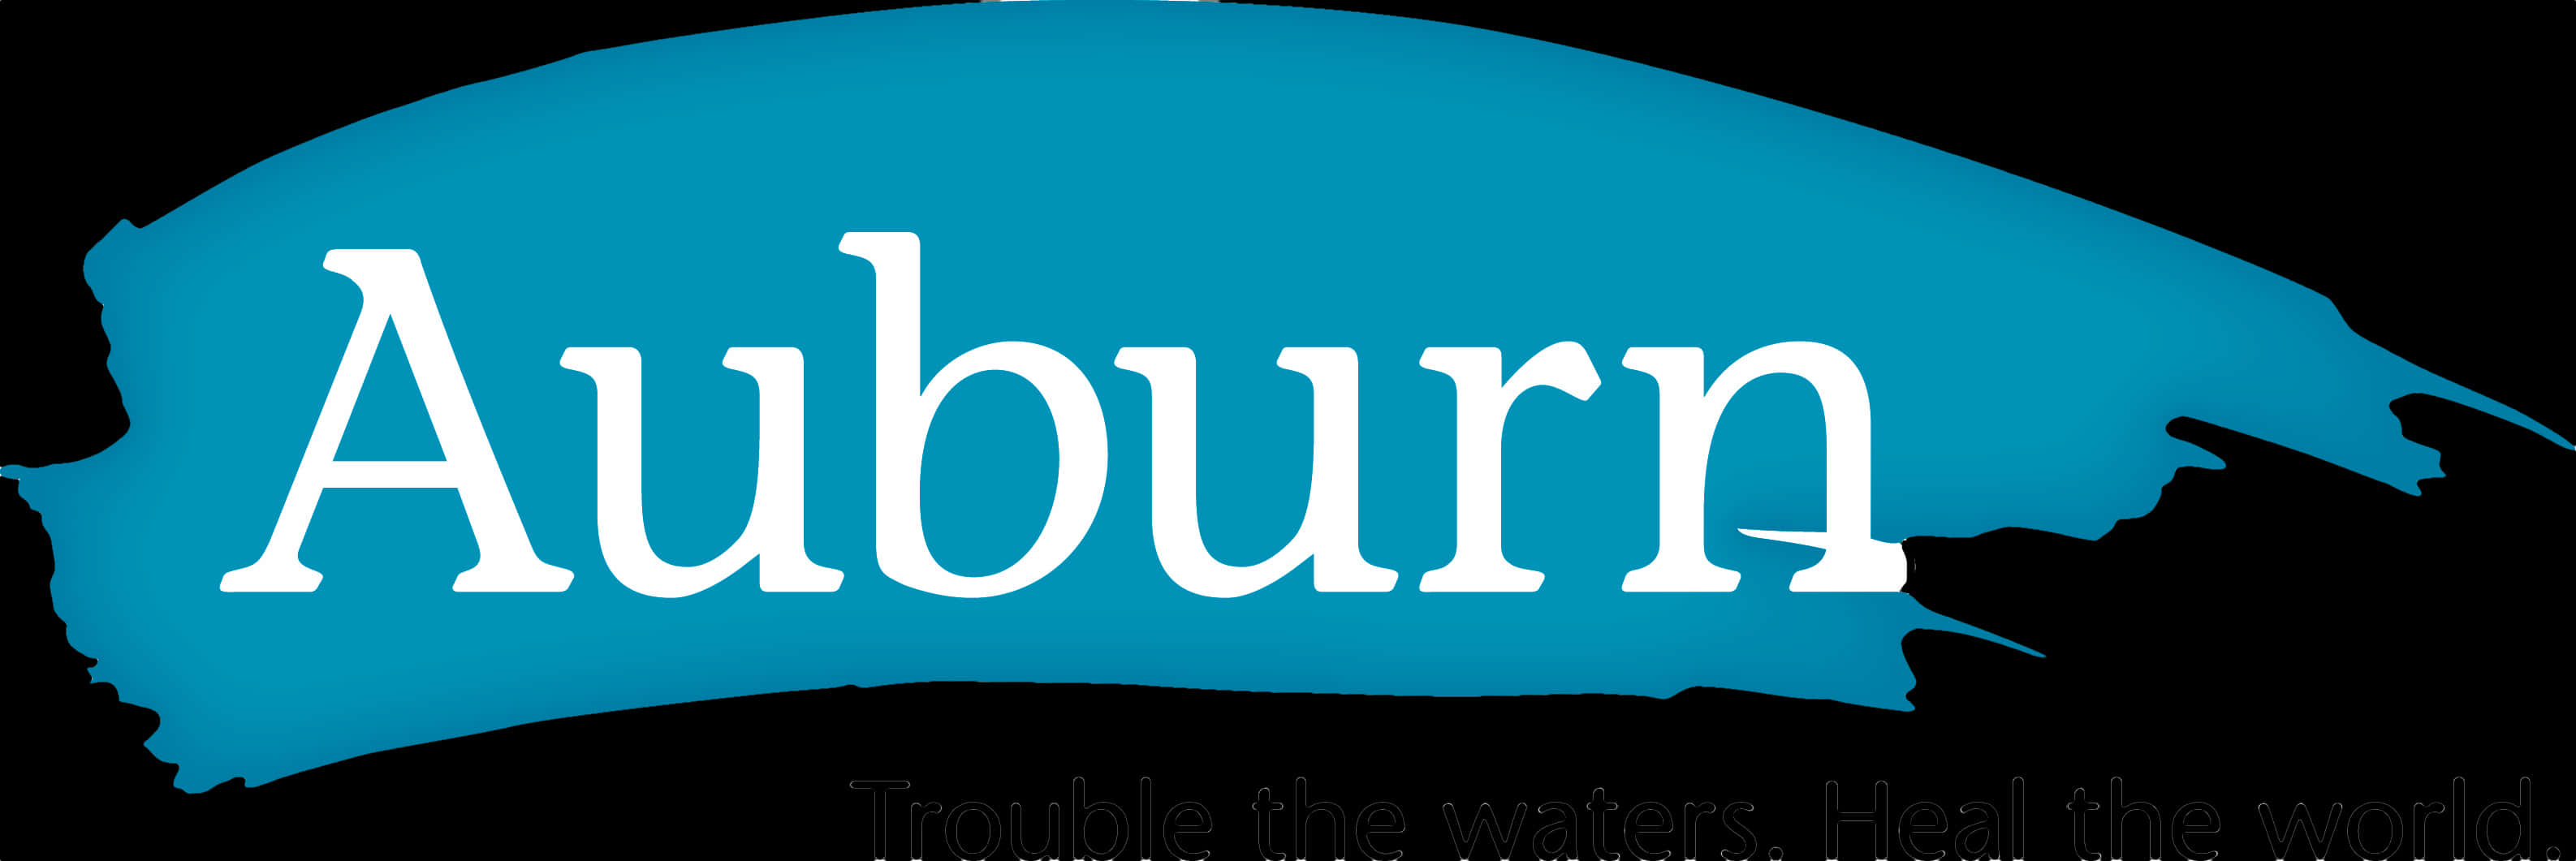 Auburn University Logo Graphic PNG image